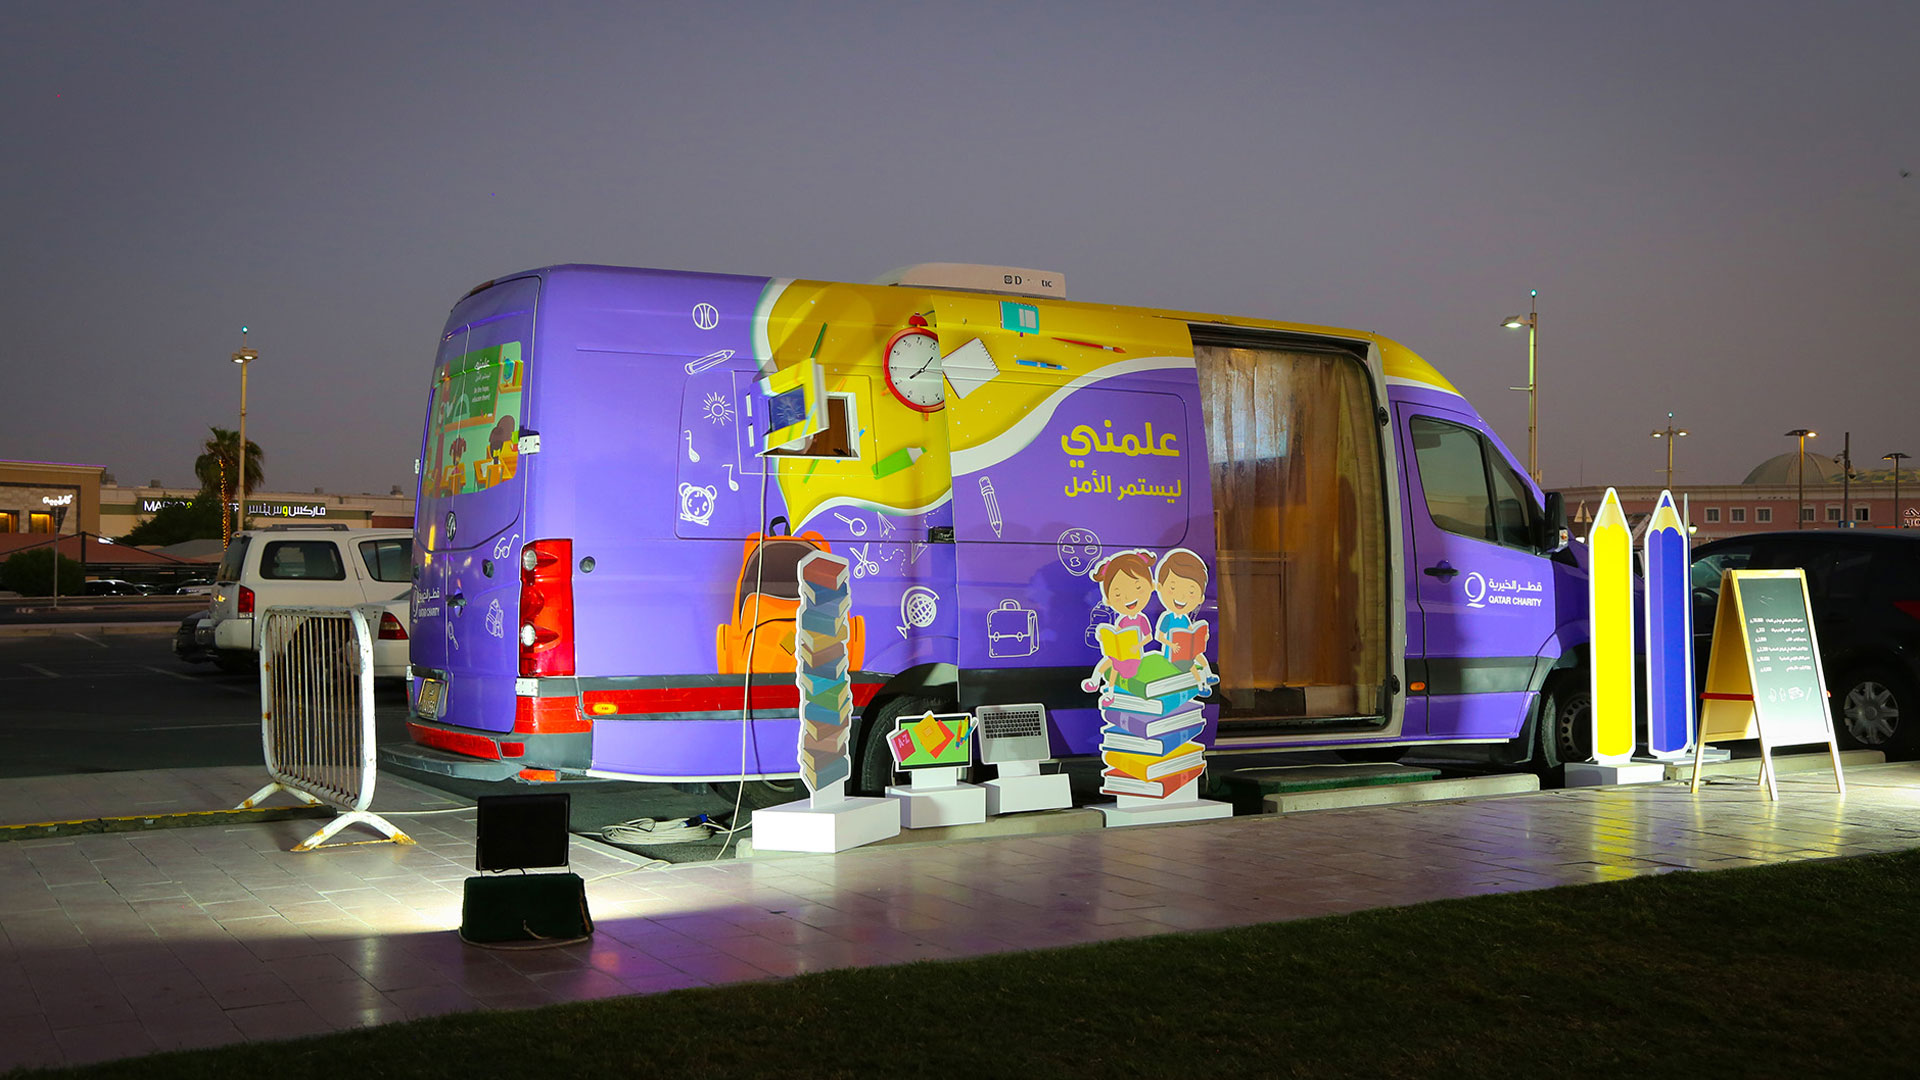 Qatar Charity operates "Teach Me Mobile Bus"